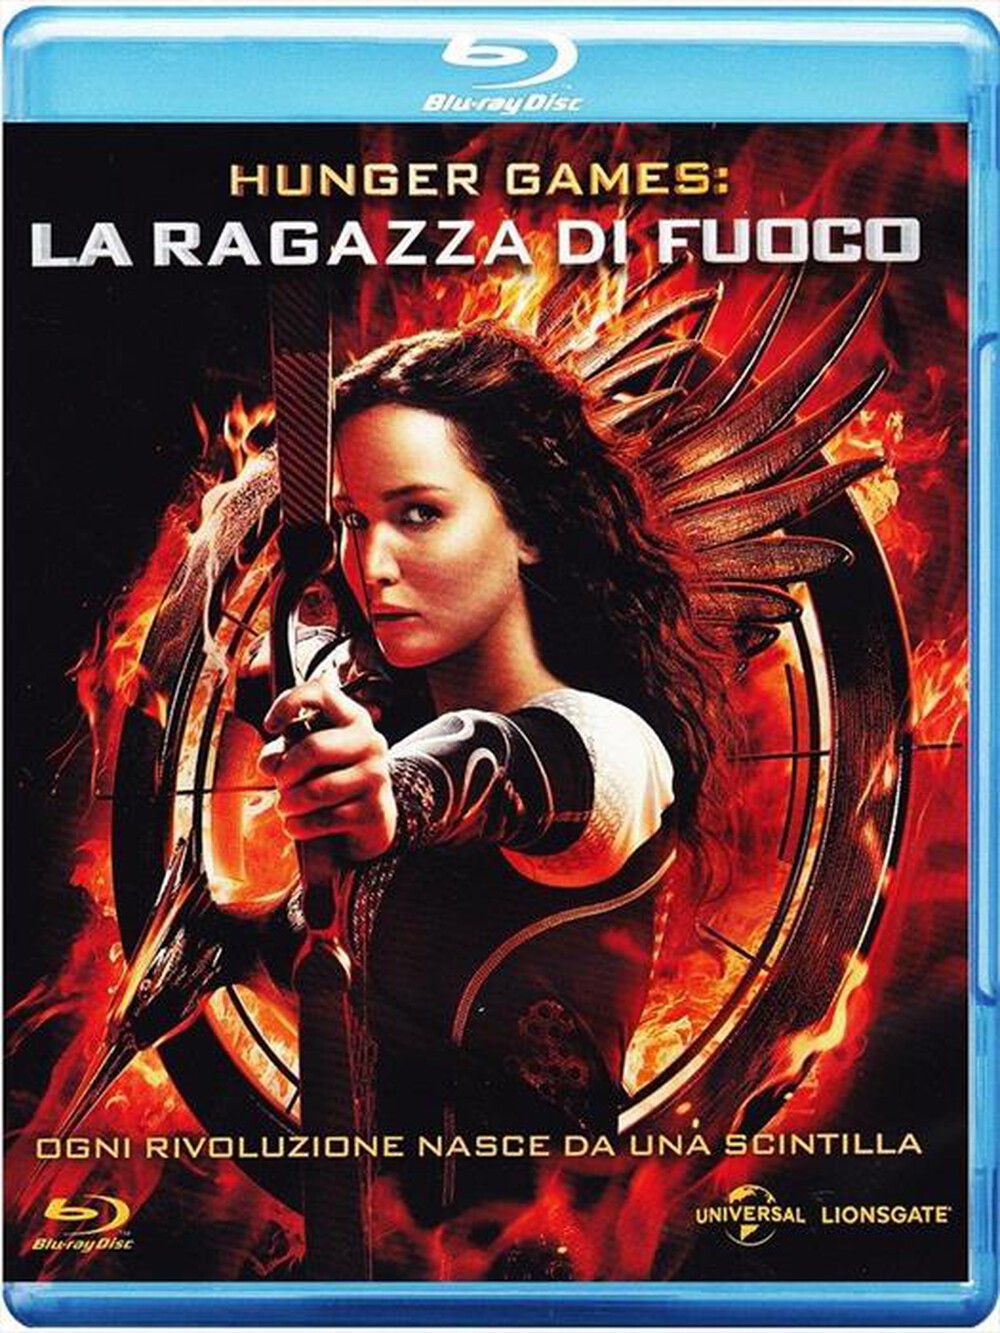 "WARNER HOME VIDEO - Hunger Games - La Ragazza Di Fuoco"